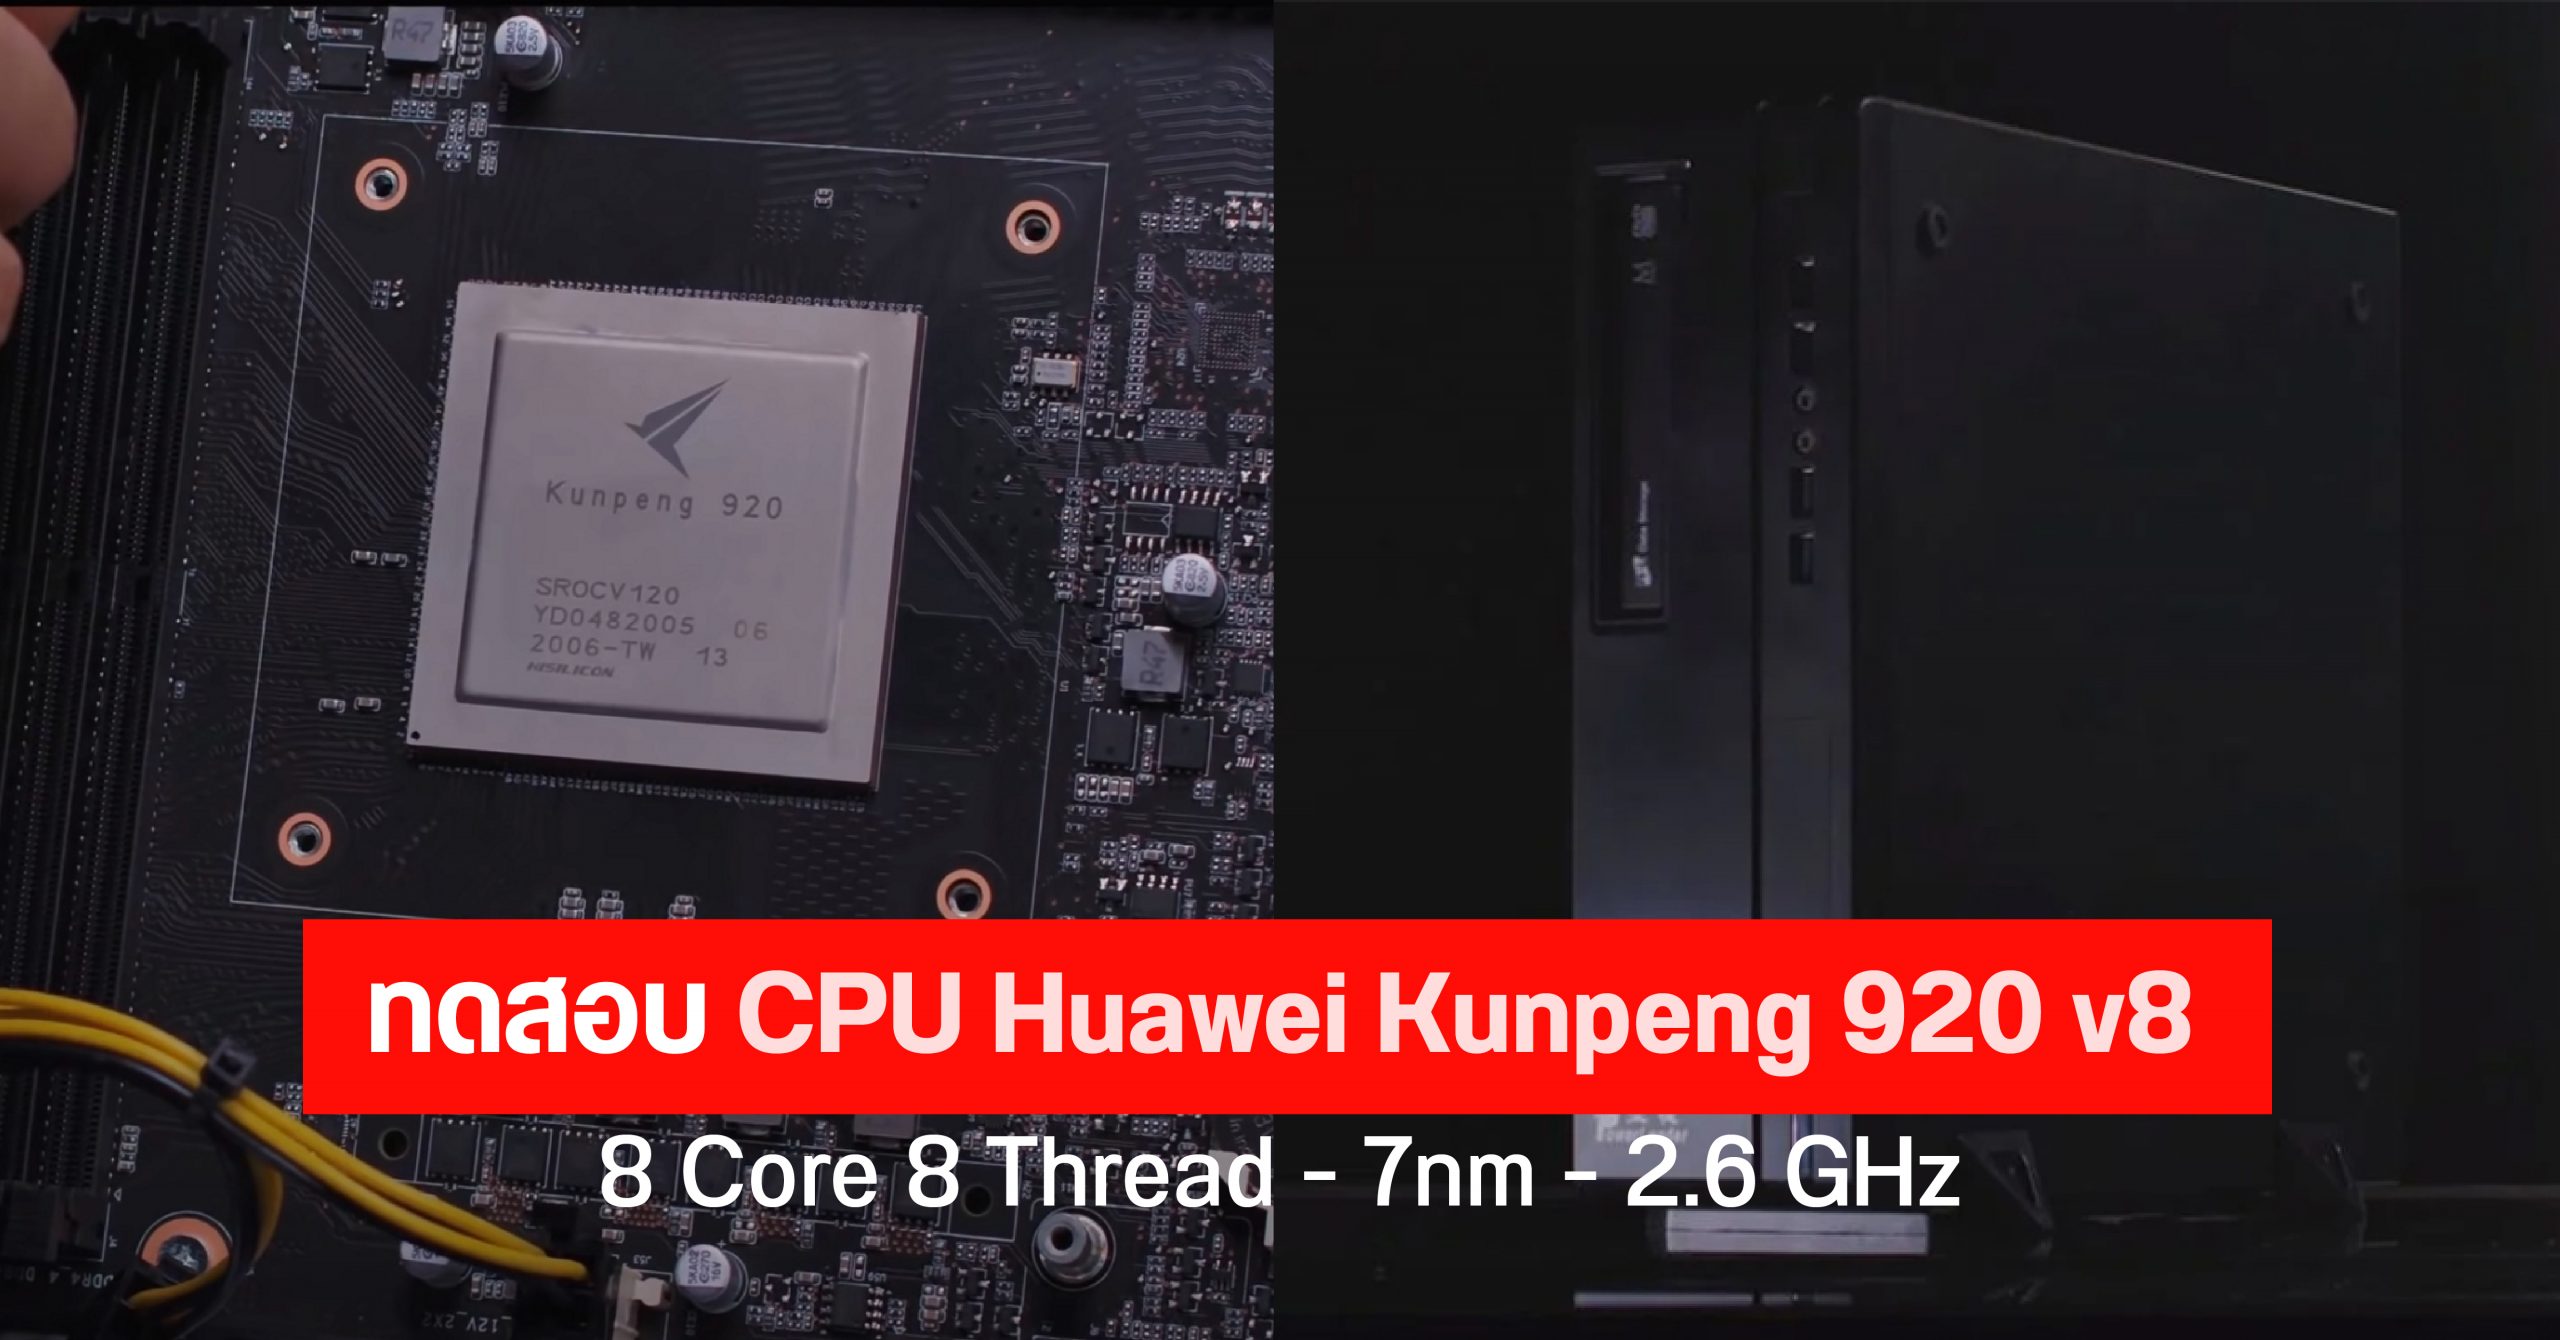 หลุดผลทดสอบชิป Huawei Kunpeng 920 บน Desktop PC สเปค 8 core 8 threads ความเร็ว 2.6GHz รัน Windows 10 สบายๆ